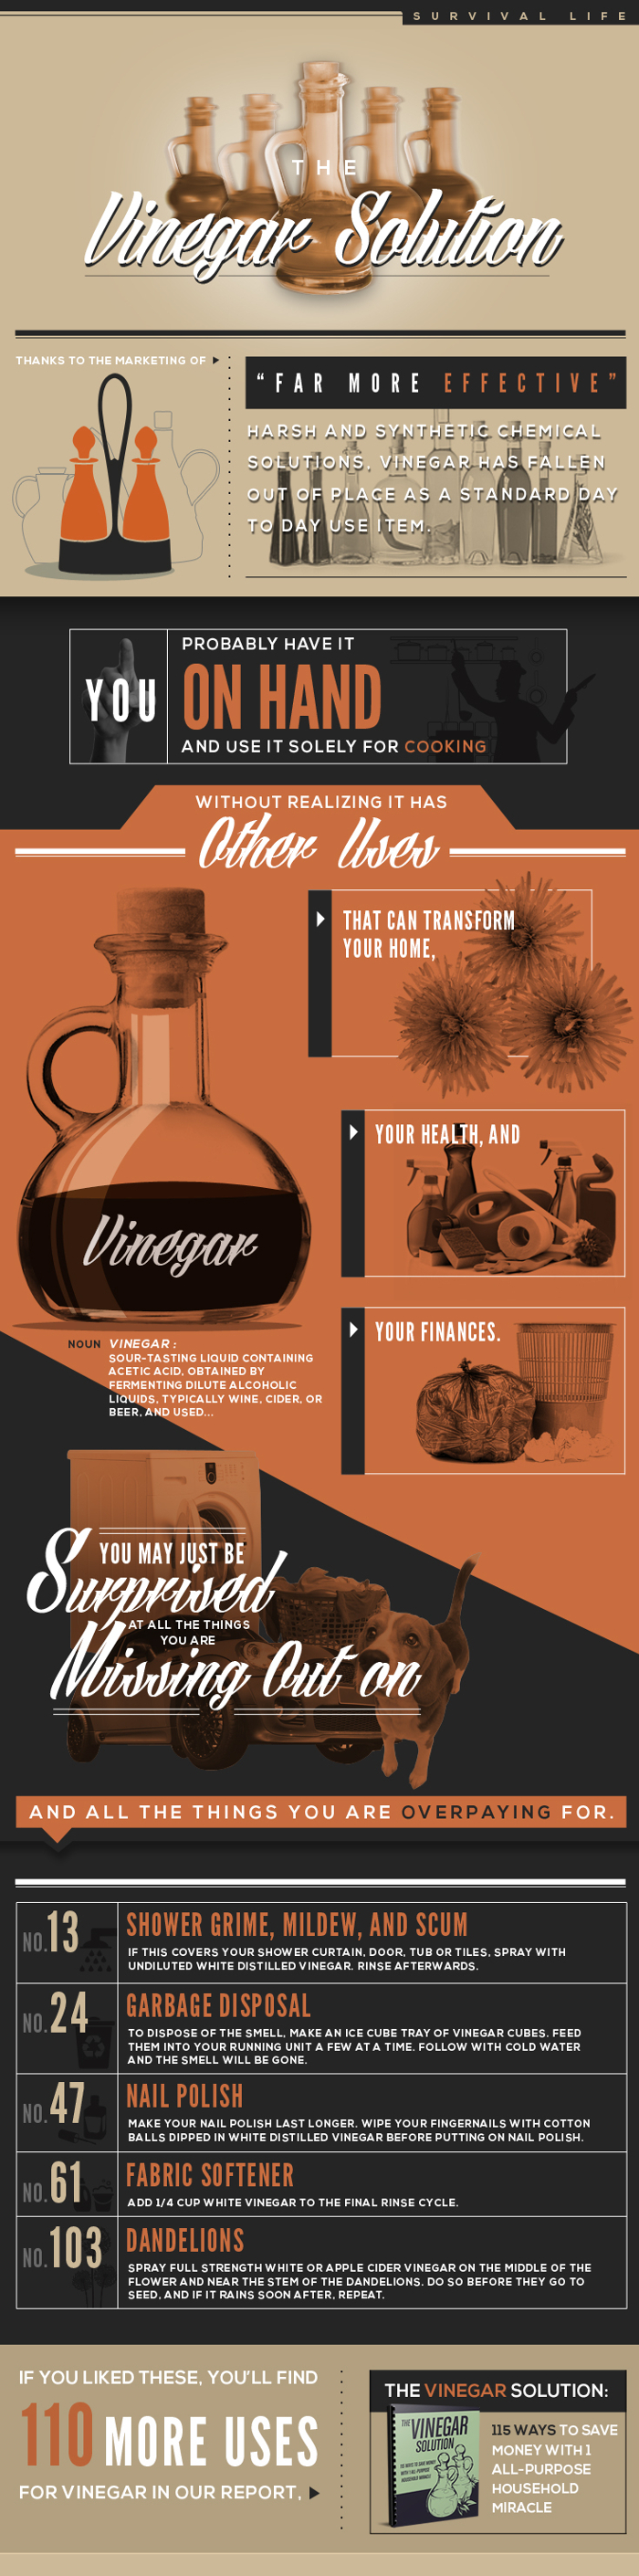 The Vinegar Solution